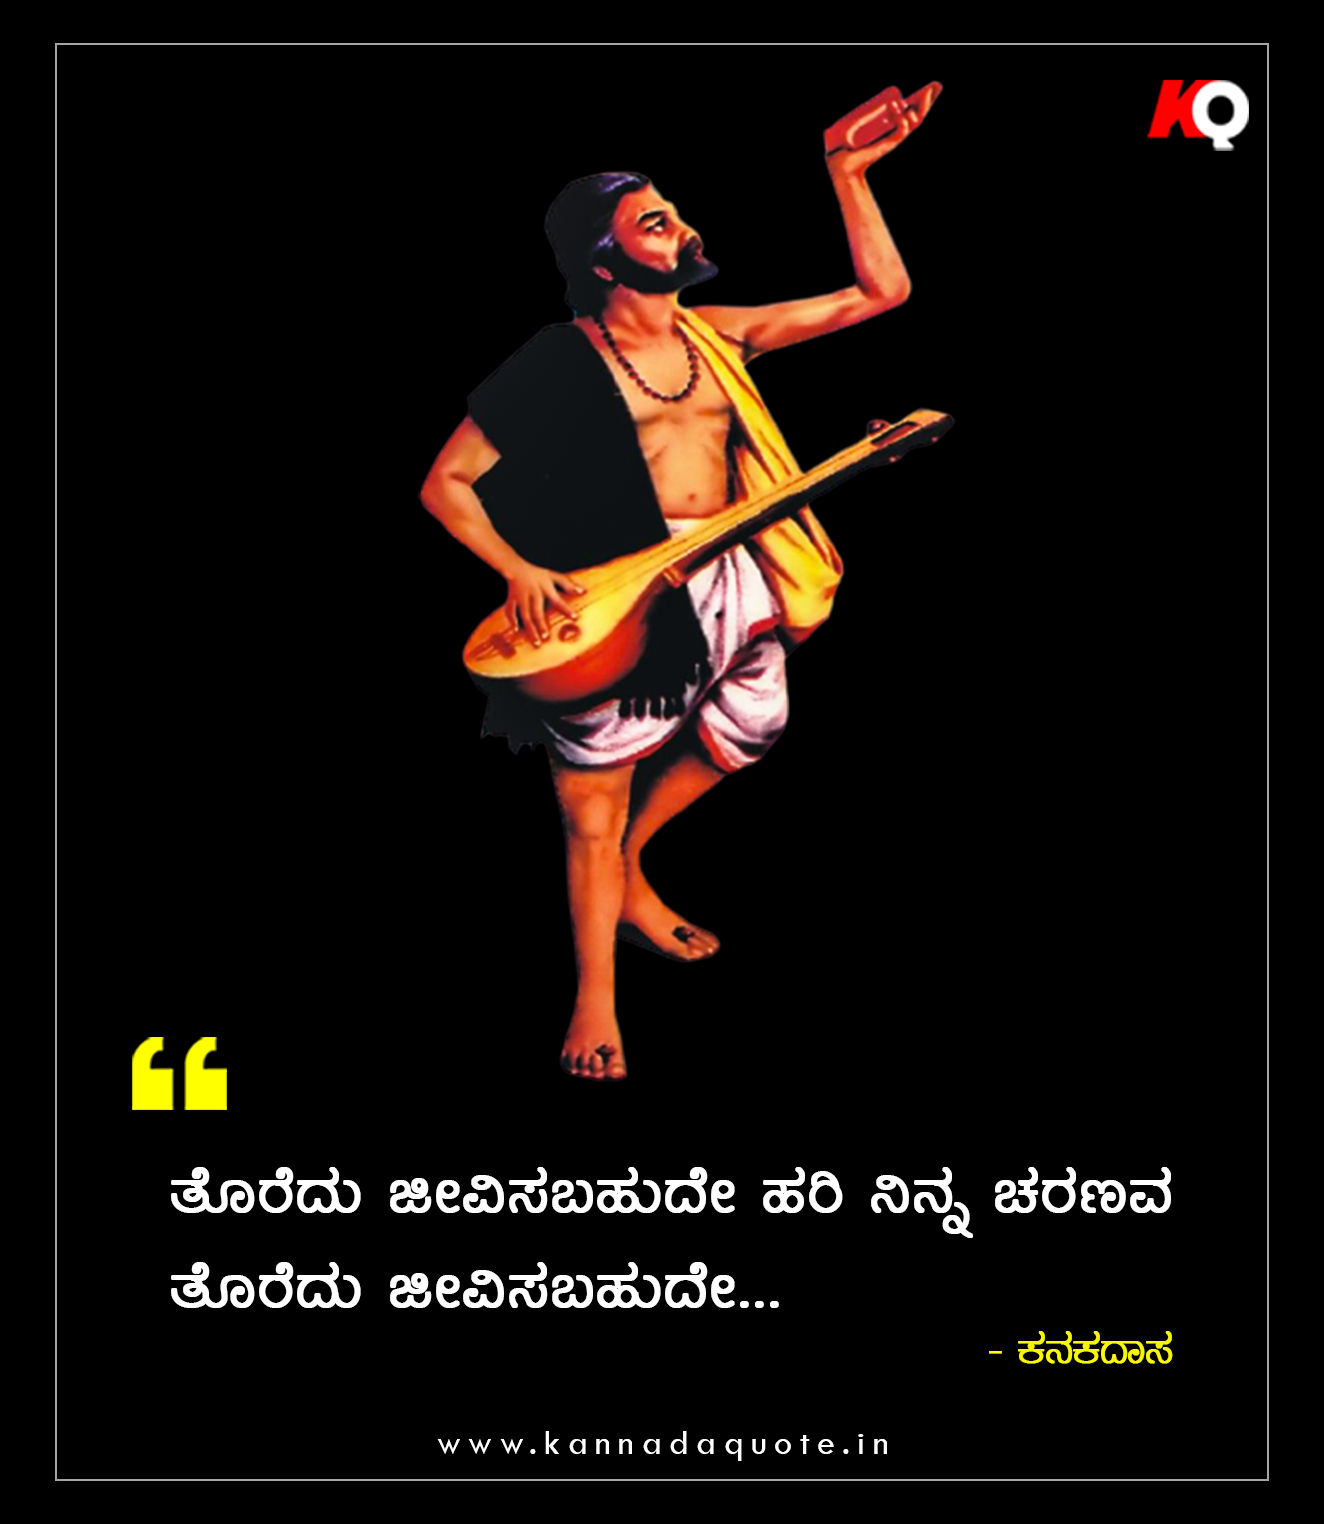 Kanakadasa jayanti wishes quotes words in kannada